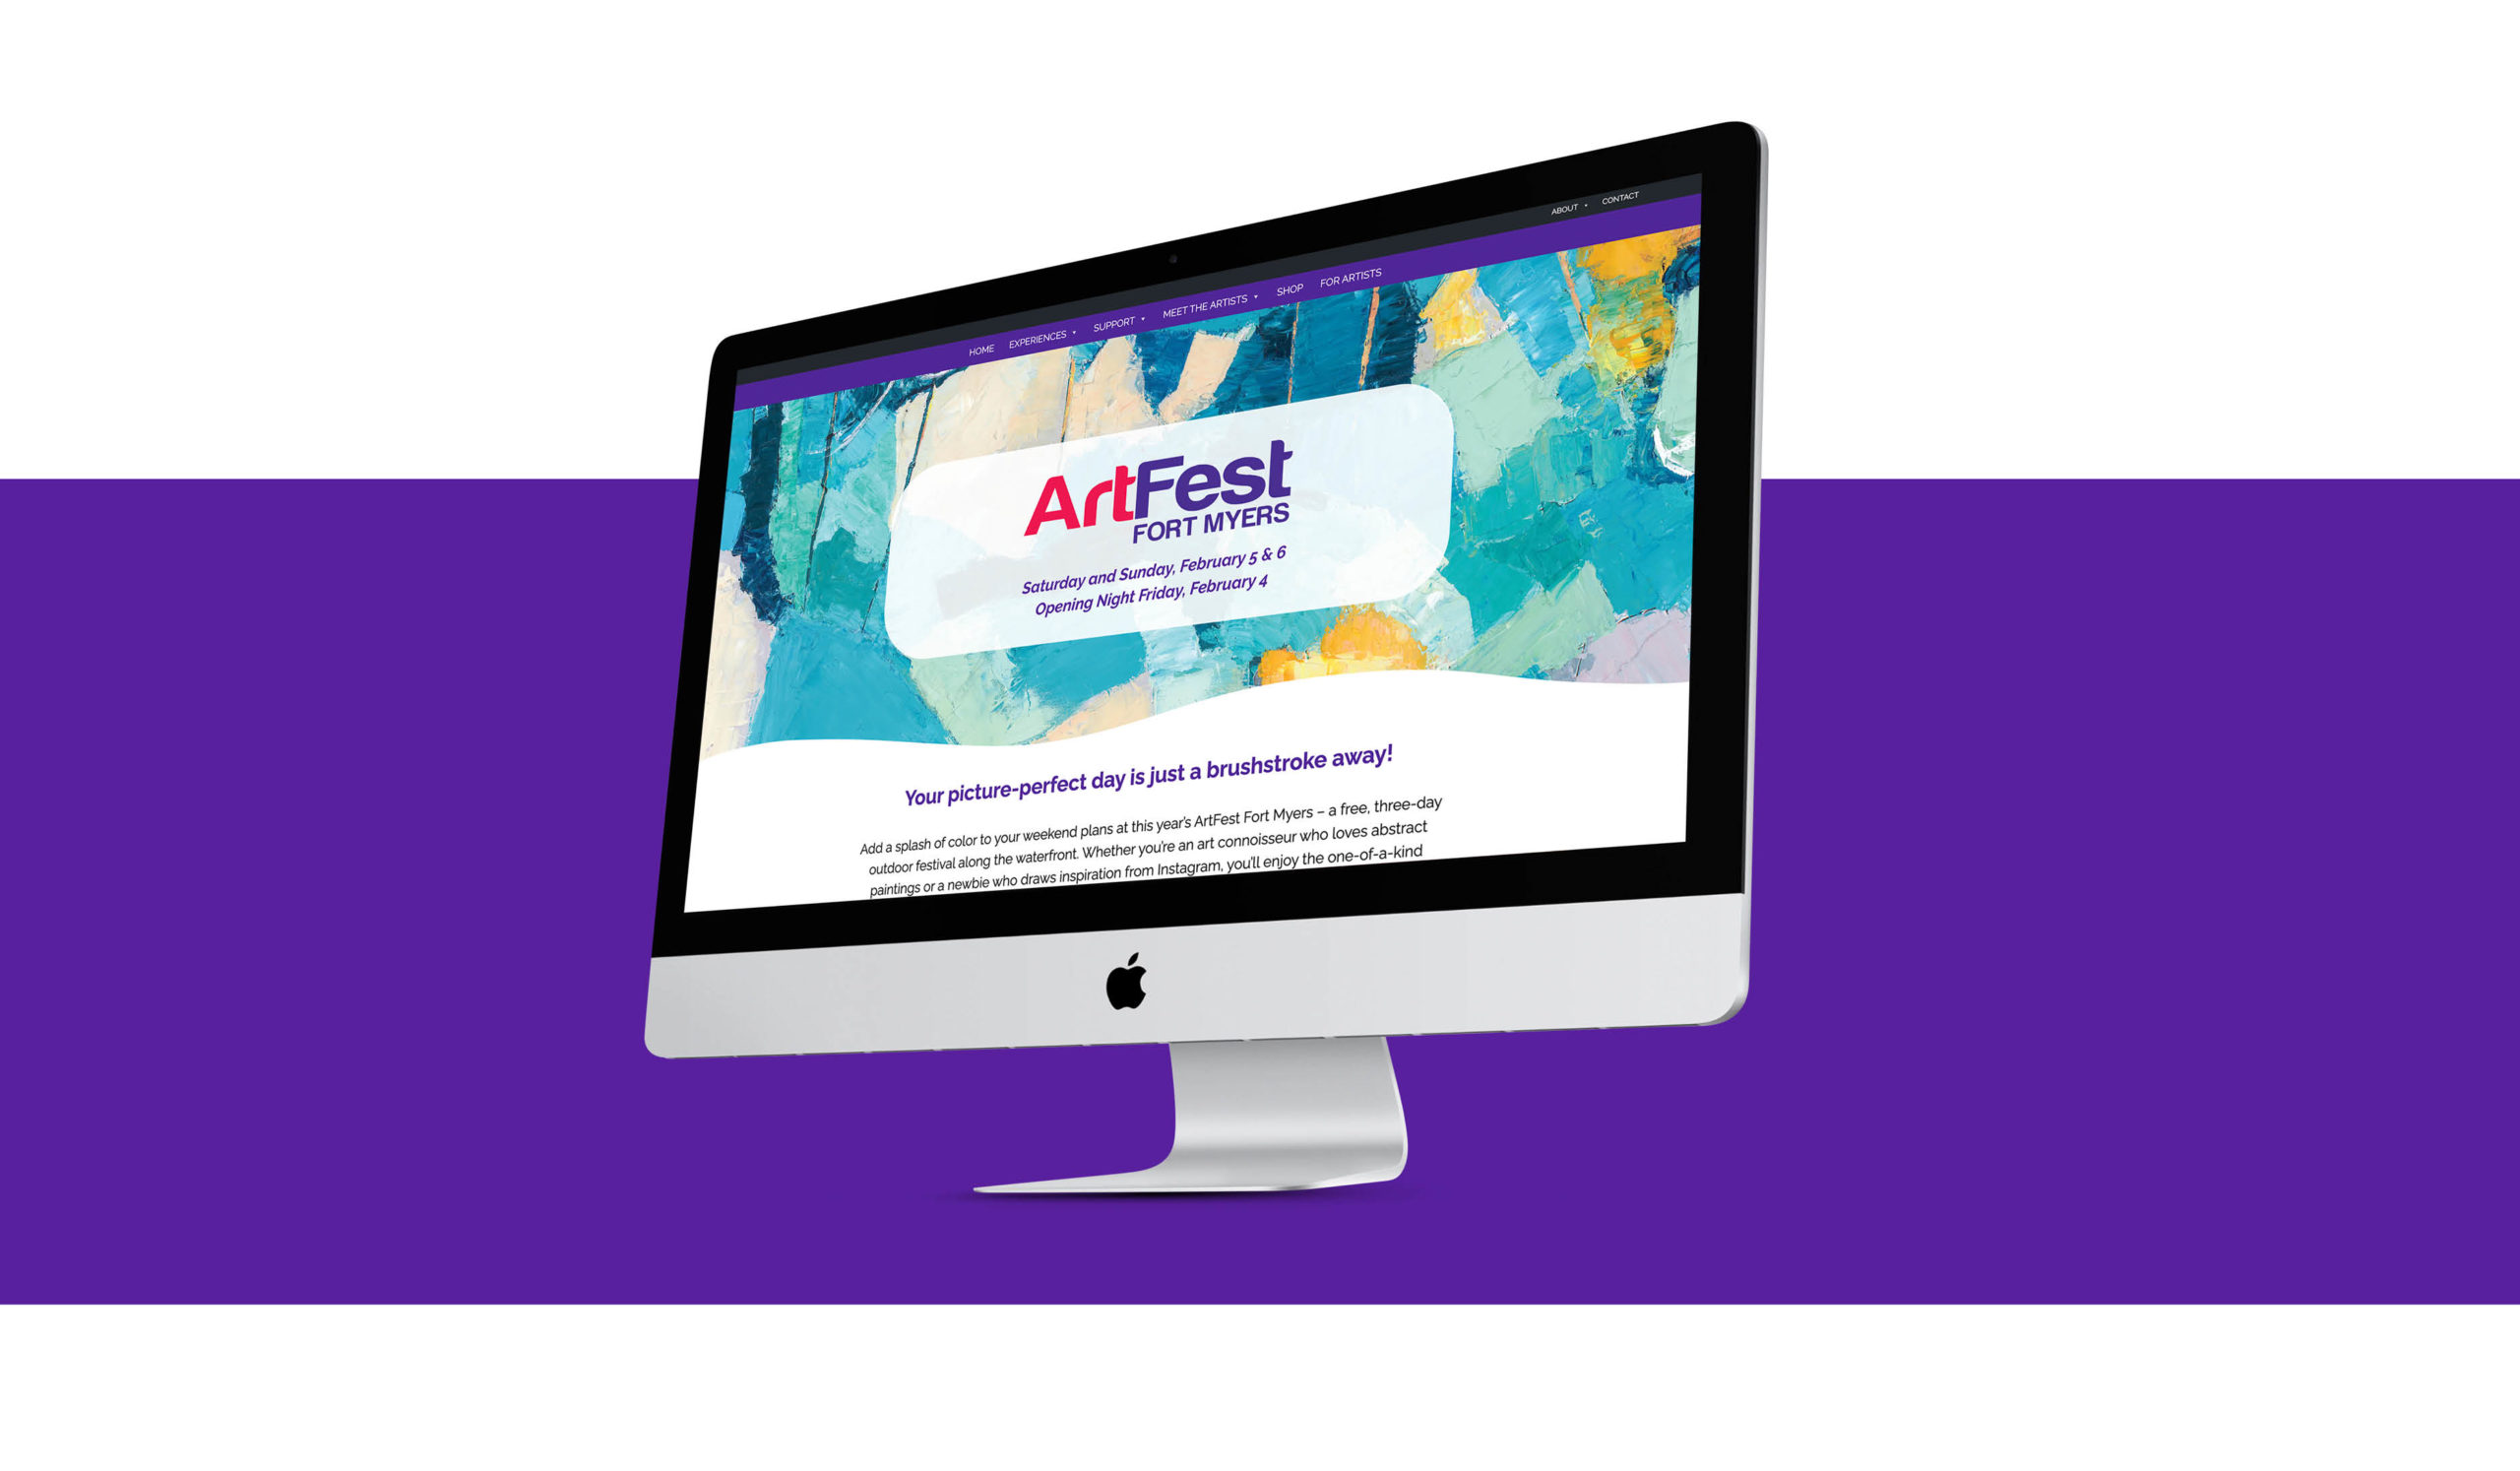 artfest fort myers website